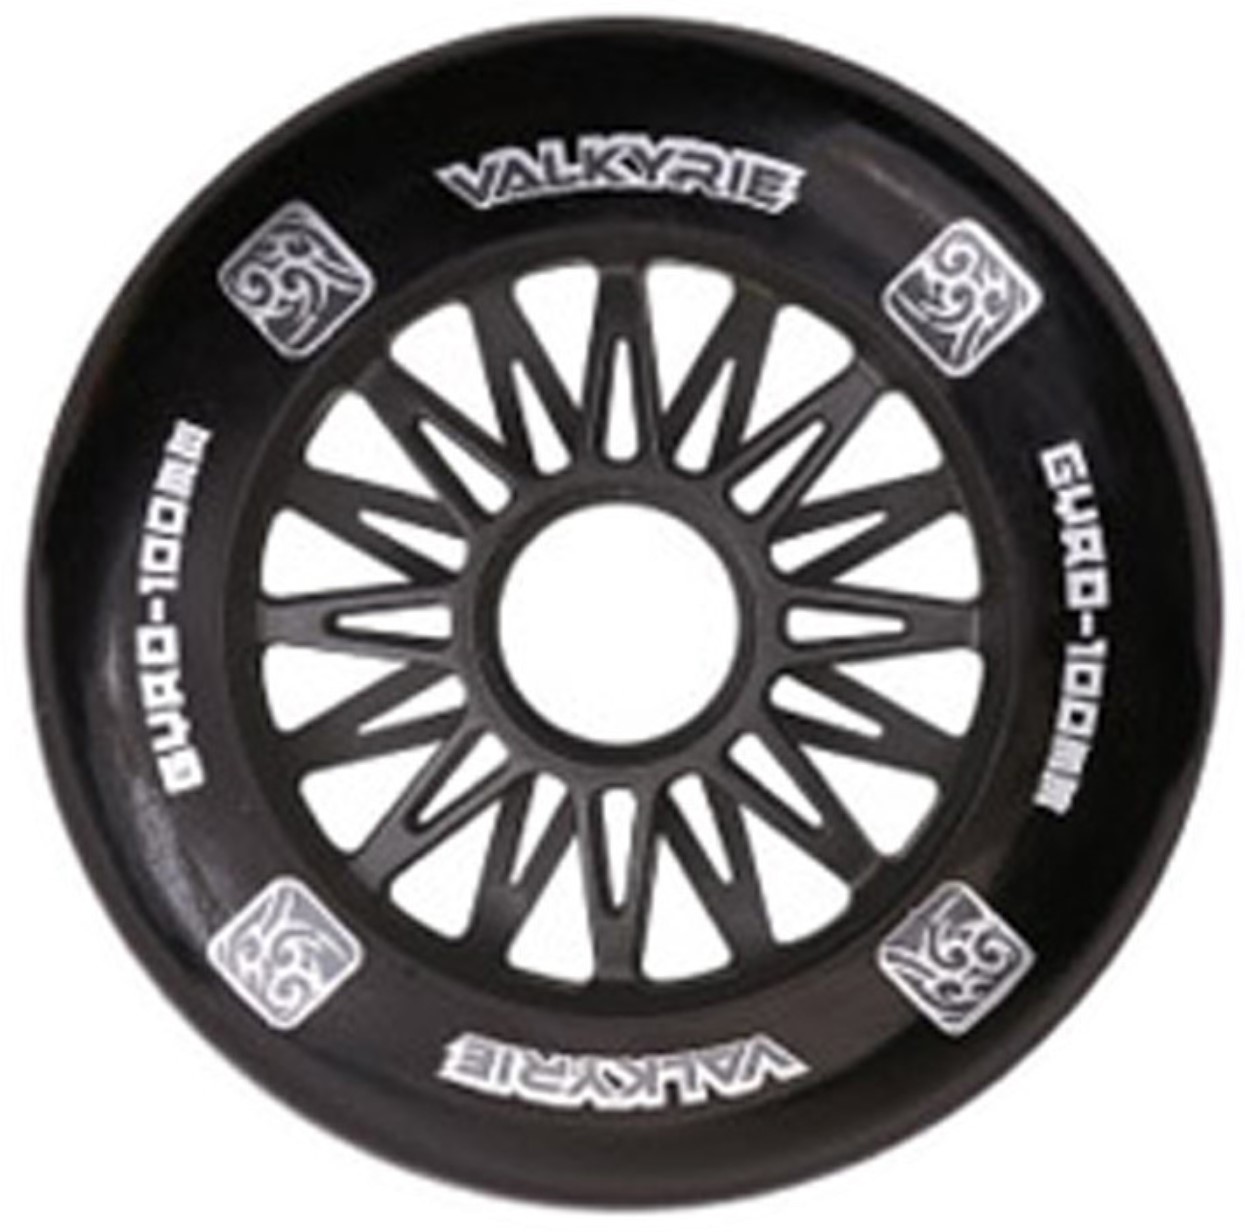 Gyro Valkyrie black inline skate wheel